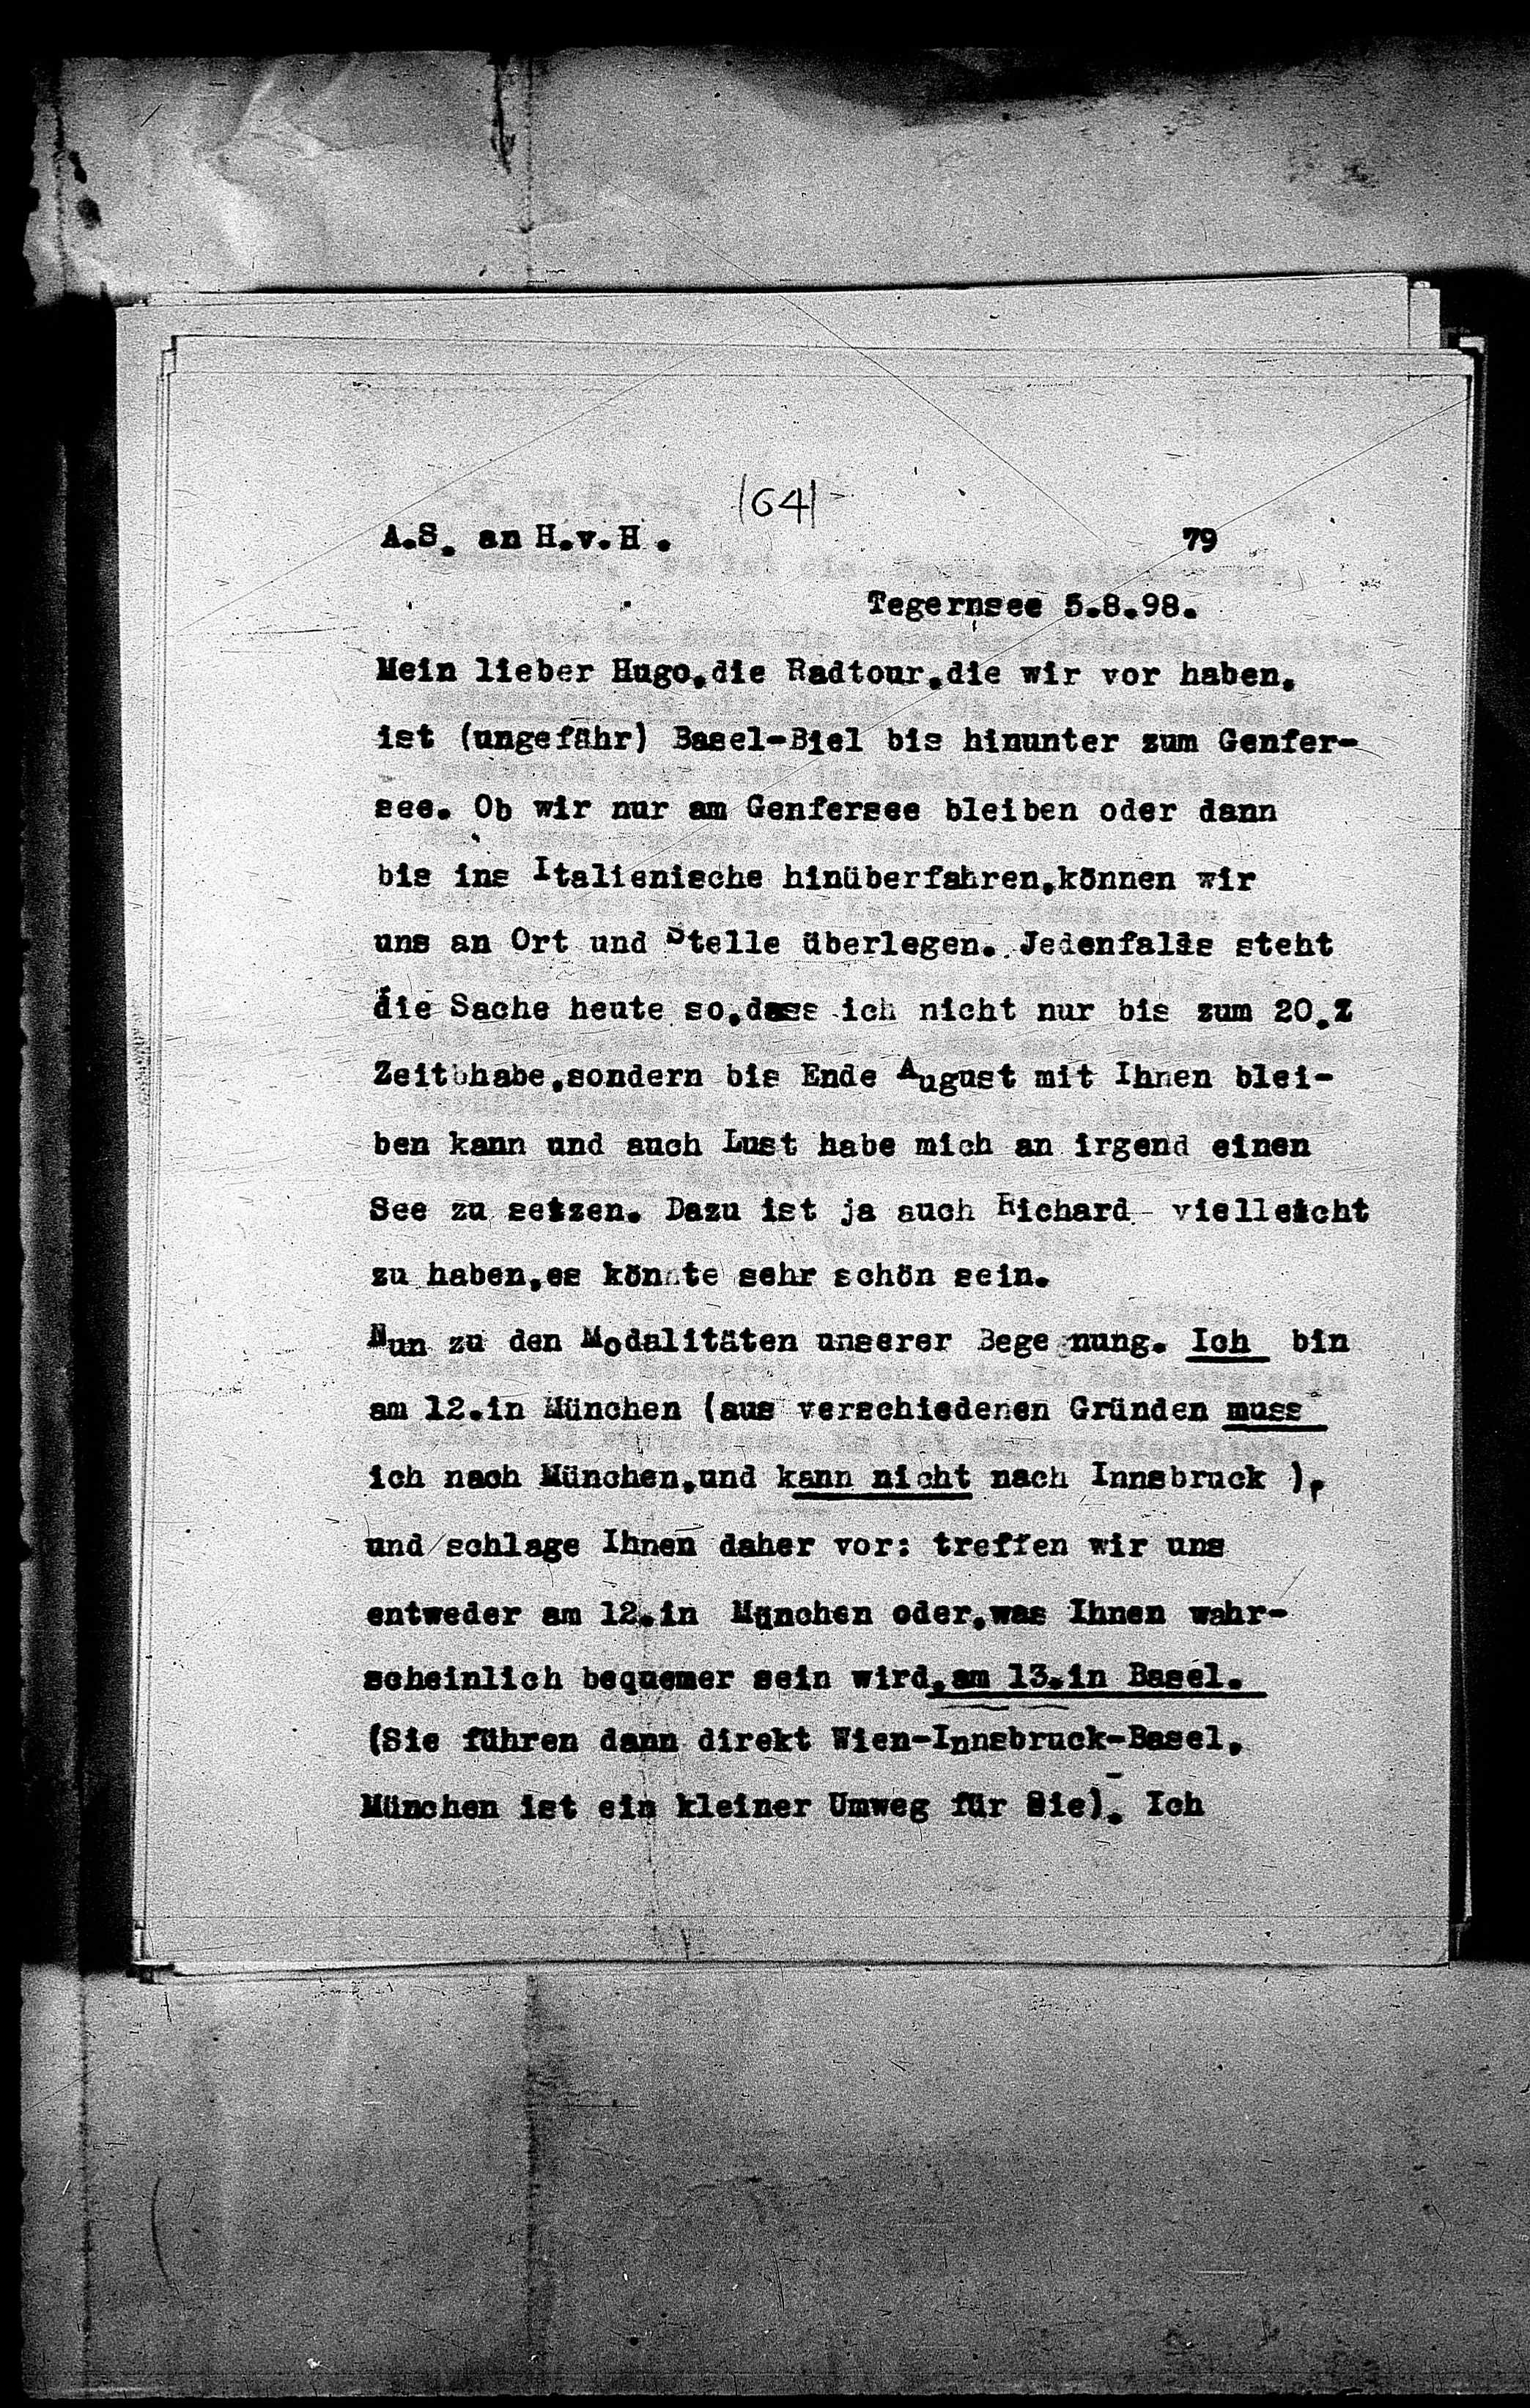 Vorschaubild für Hofmannsthal, Hugo von_AS an HvH Abschrift, HvH an AS, Originale (Mikrofilm 38), Seite 83